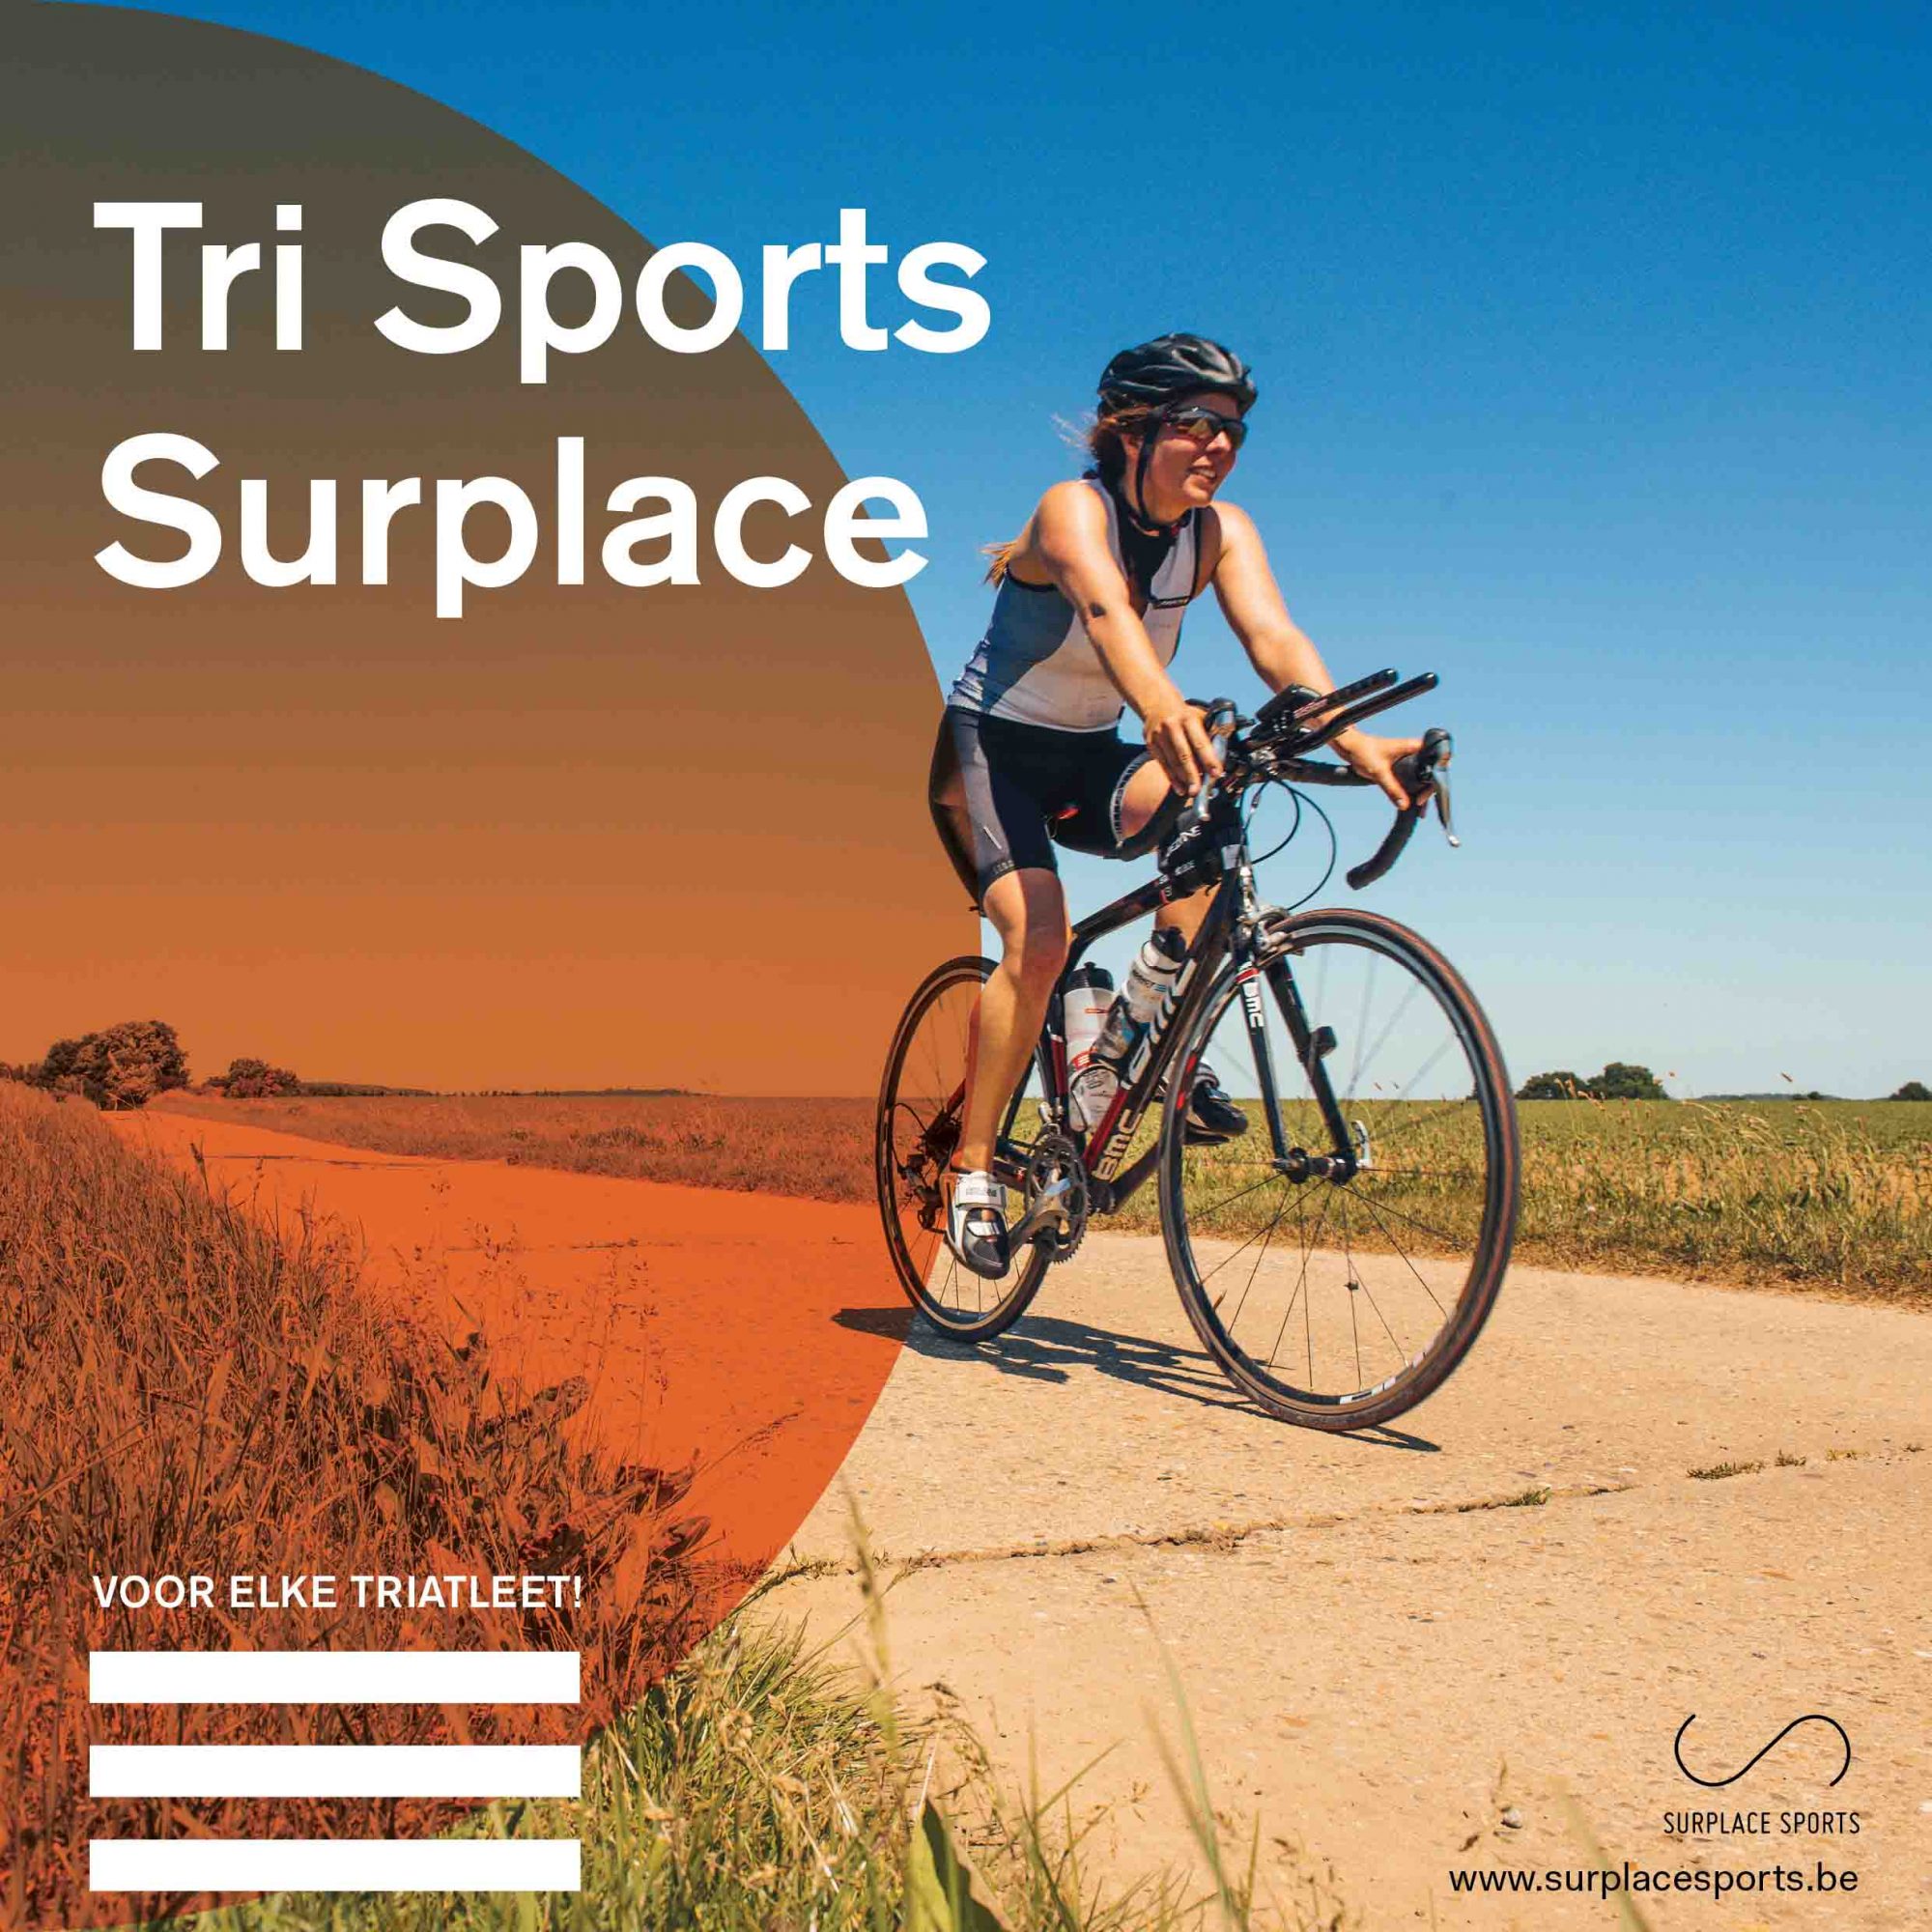 Surplace Sports - Tri Sports Surplace - Affiche